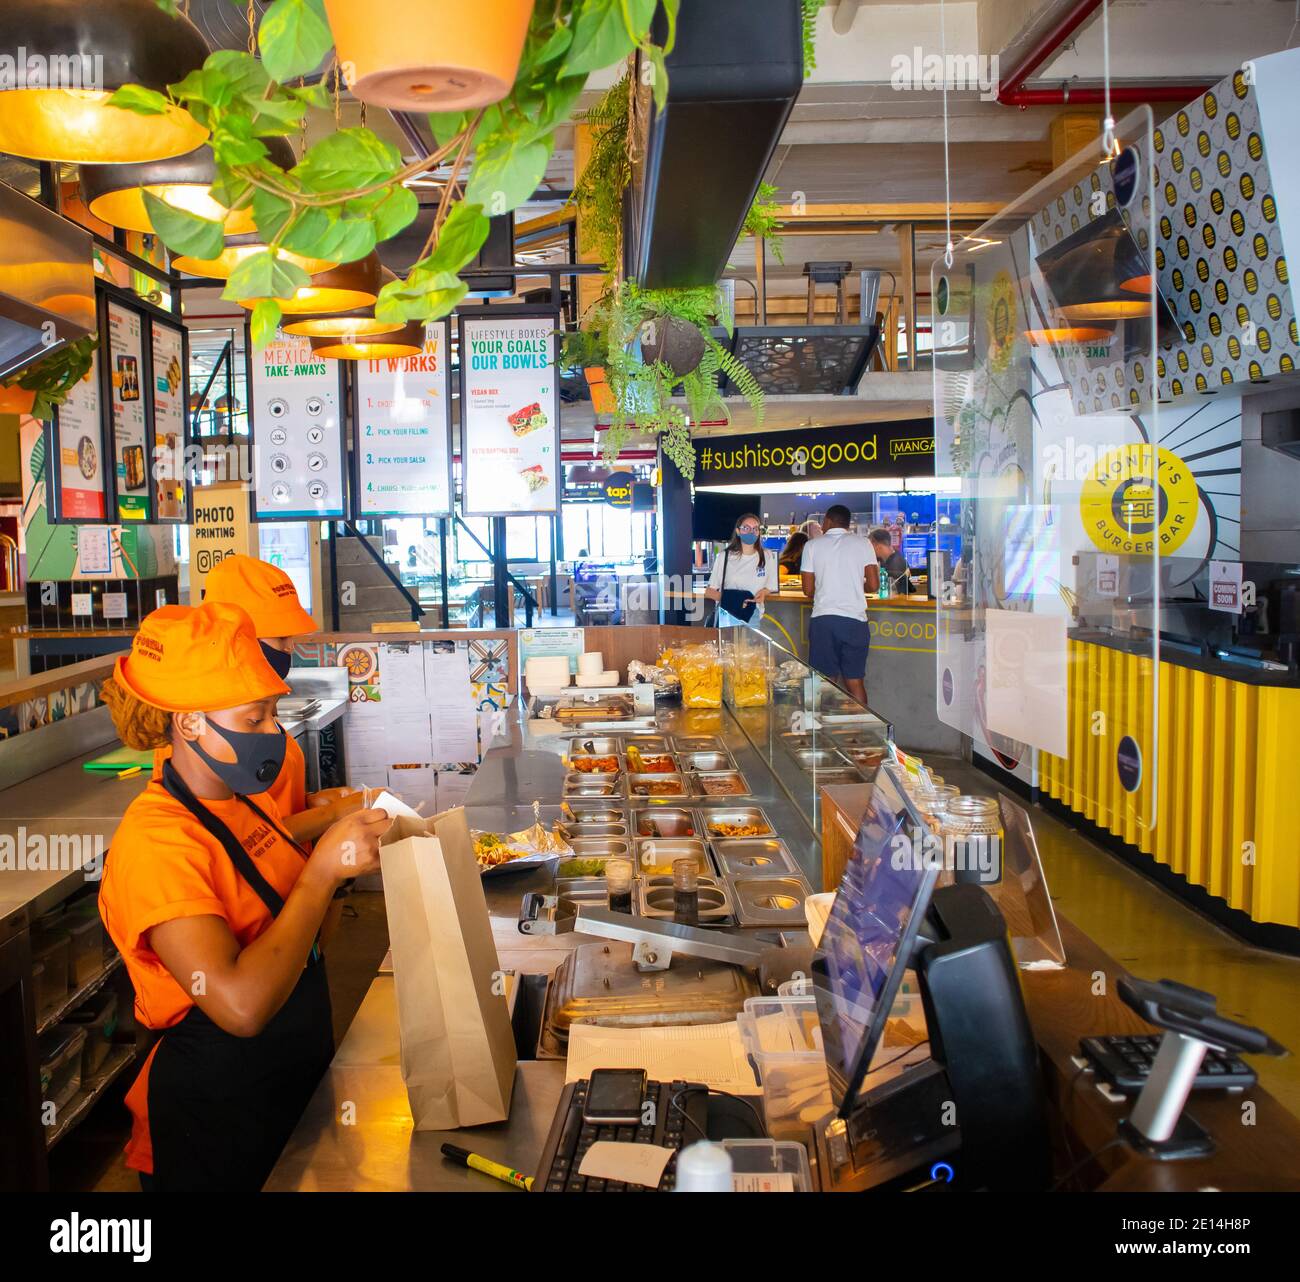 Mojo Markt- Kapstadt, Südafrika- 16/12/2020 Lebensmittelstand im Mojo Markt. Freundliches Personal mit leuchtend orangefarbenen Outfits und Gesichtsmasken, die Essen zubereiten Stockfoto